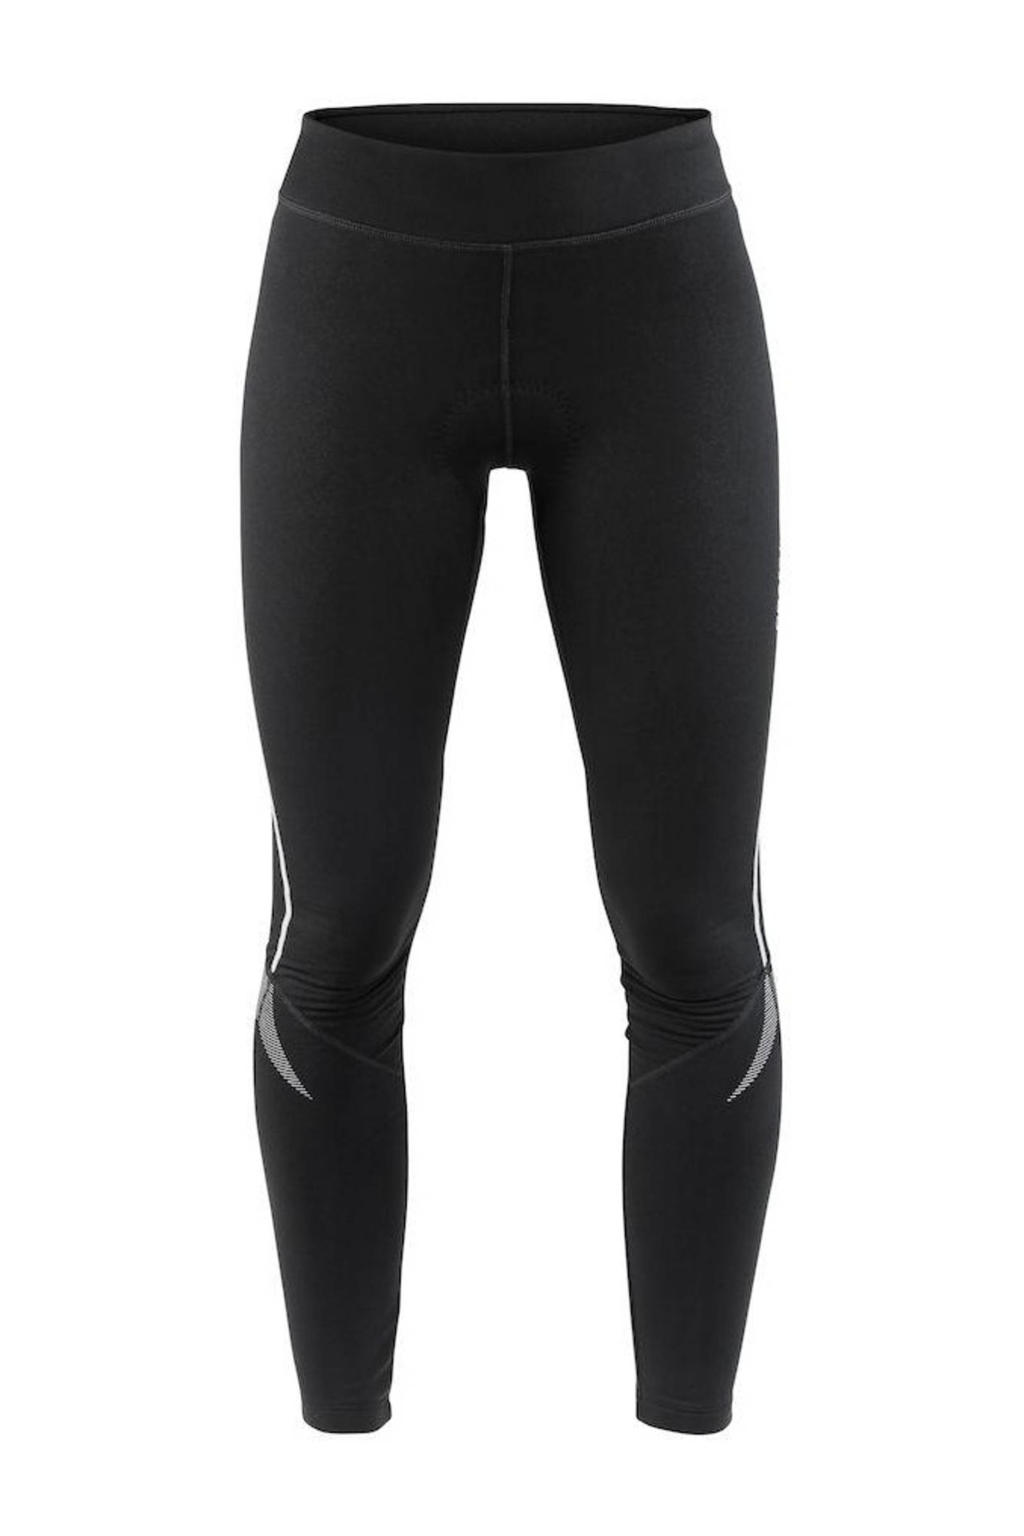 Zwarte dames Craft fietsbroek Ideal Thermal van polyester met slim fit, regular waist en elastische tailleband